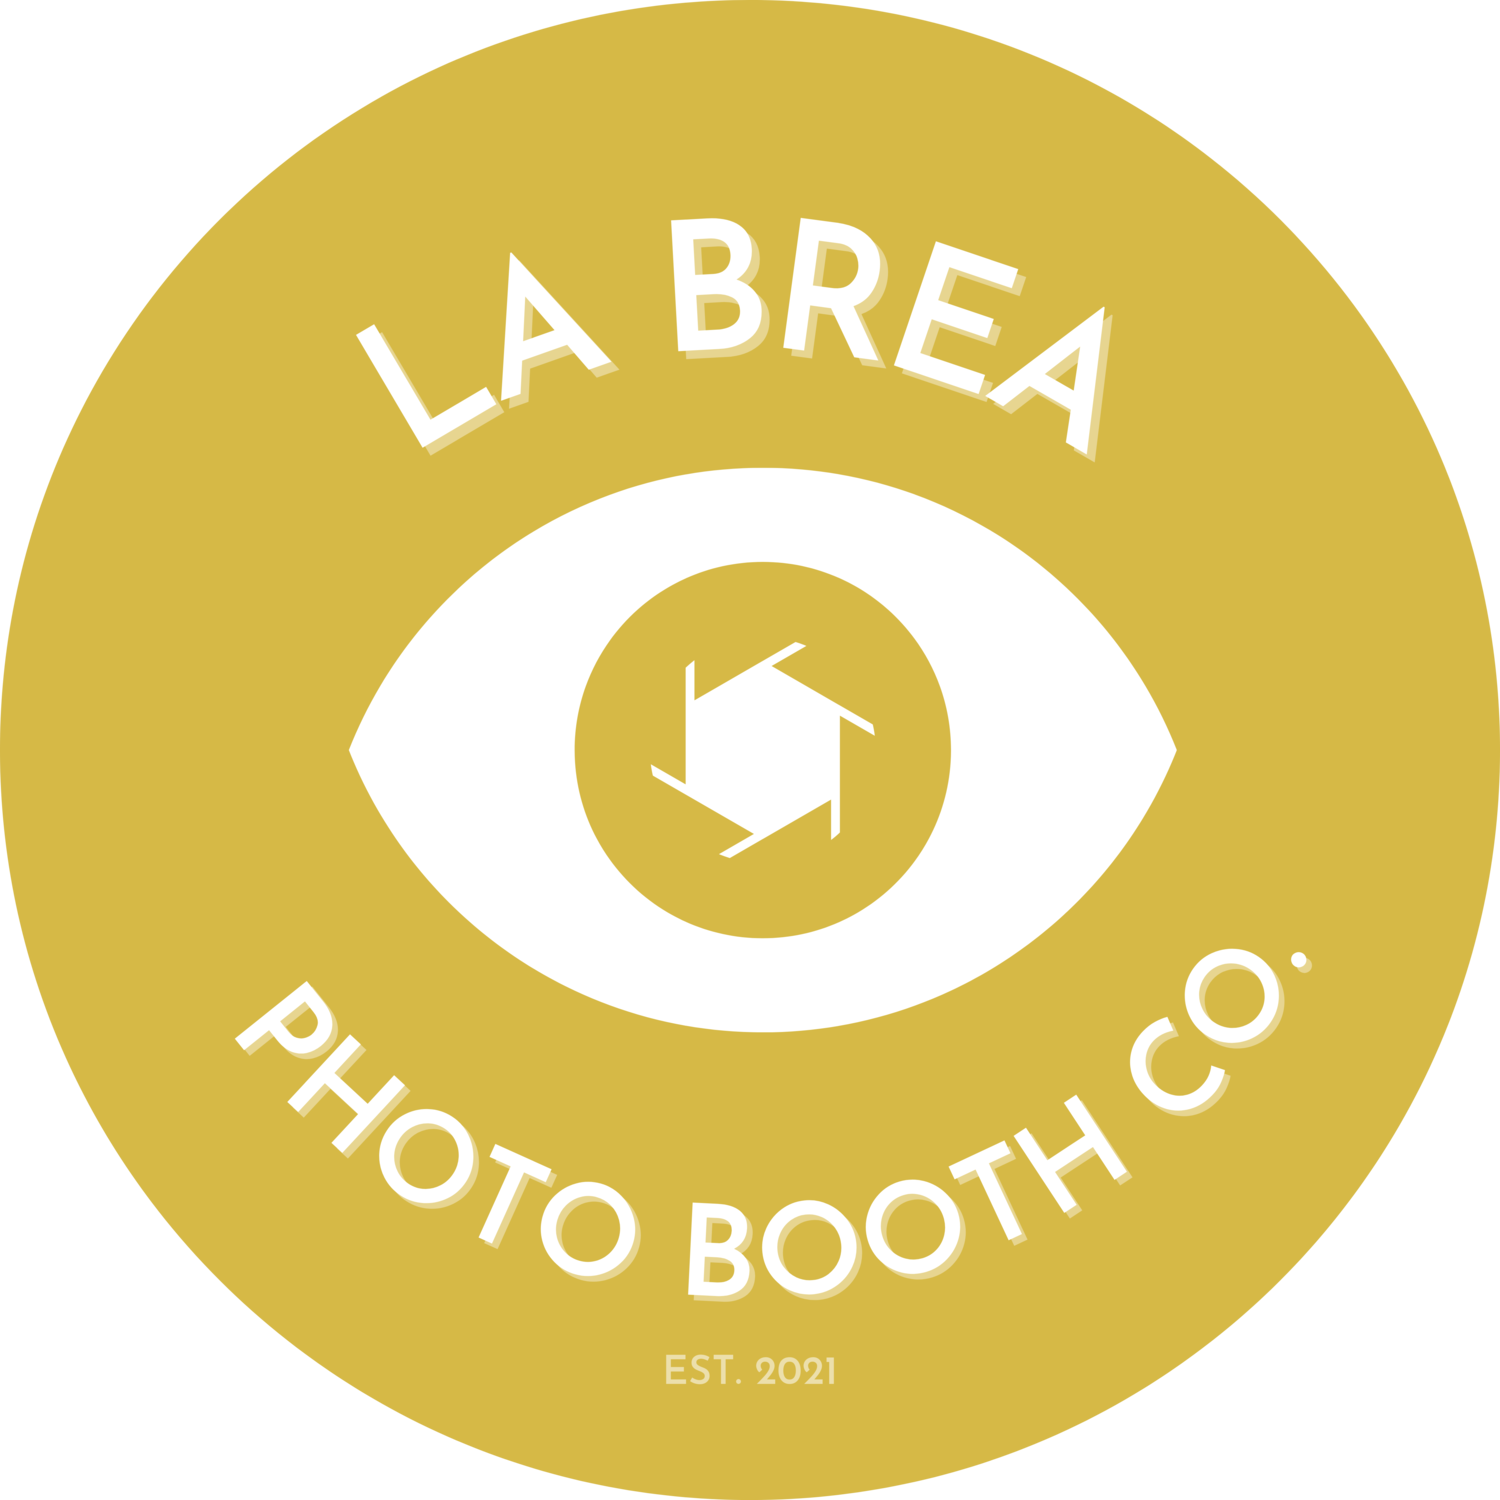 La Brea Photo Booth Company